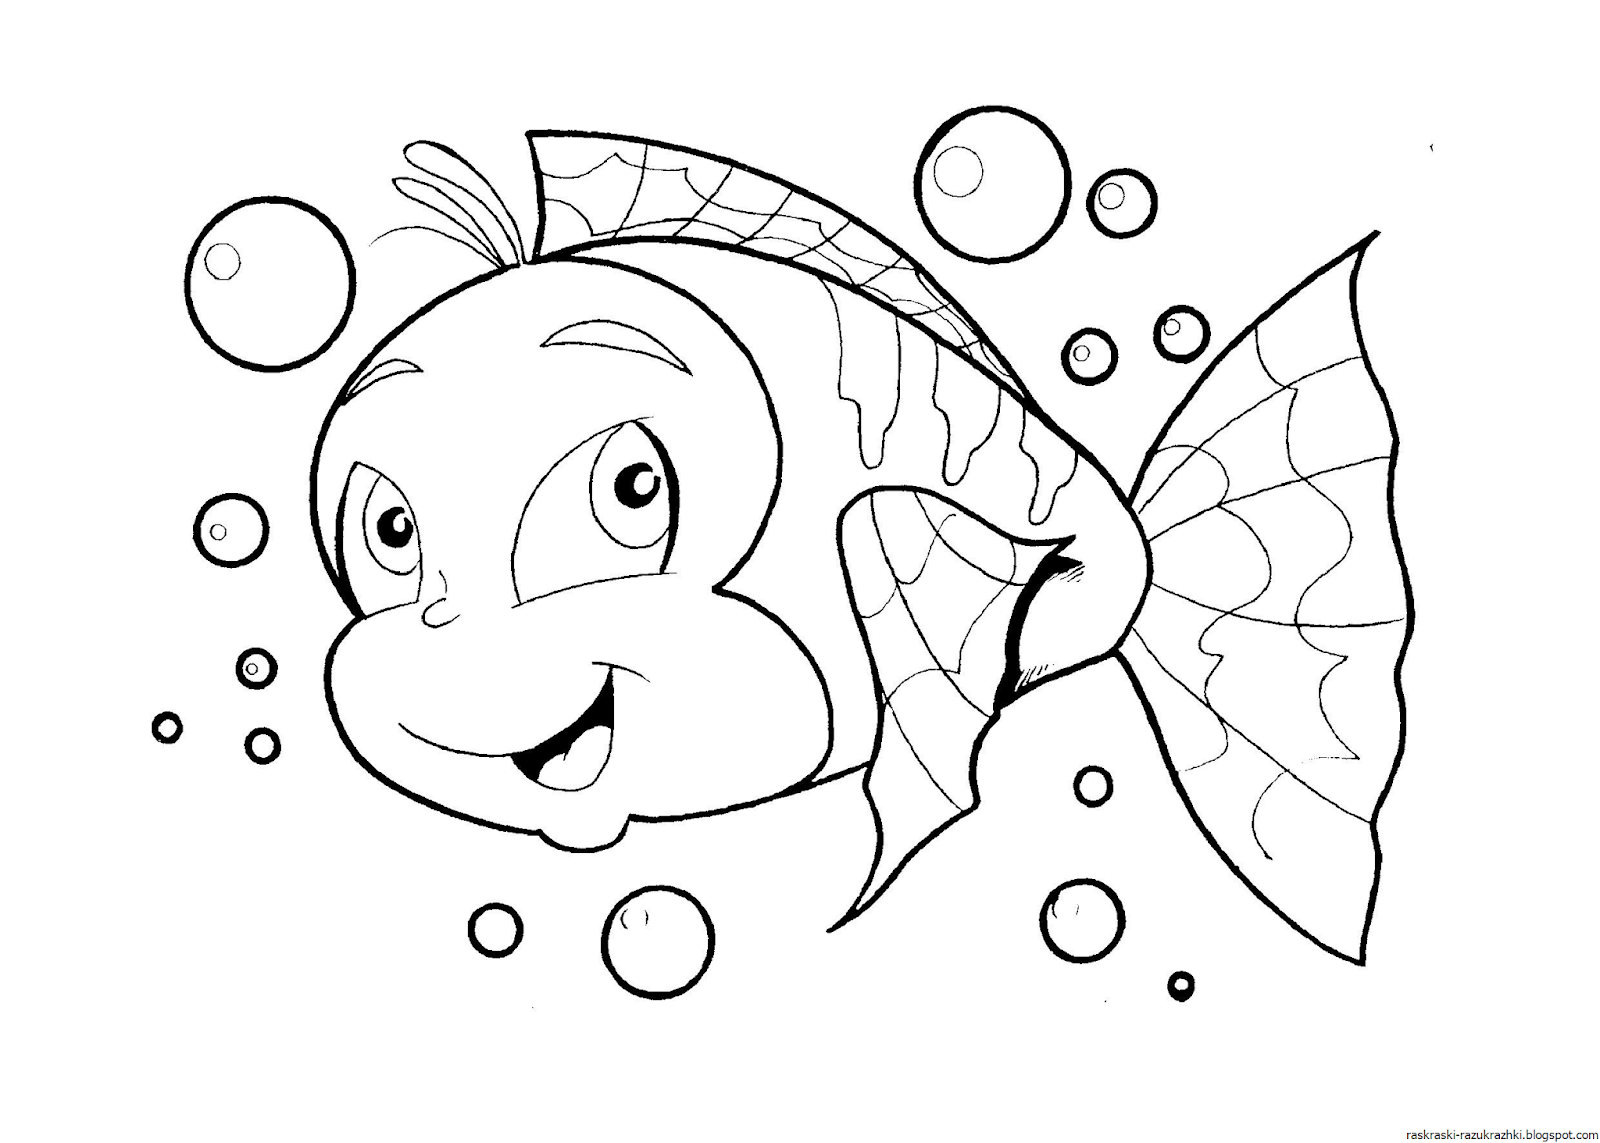 Раскраска рыбка. Рыба раскраска для детей. Рыбка раскраска для детей. Раскраски для девочек рыбки. Раскраски рыбки для детей 3 4 лет